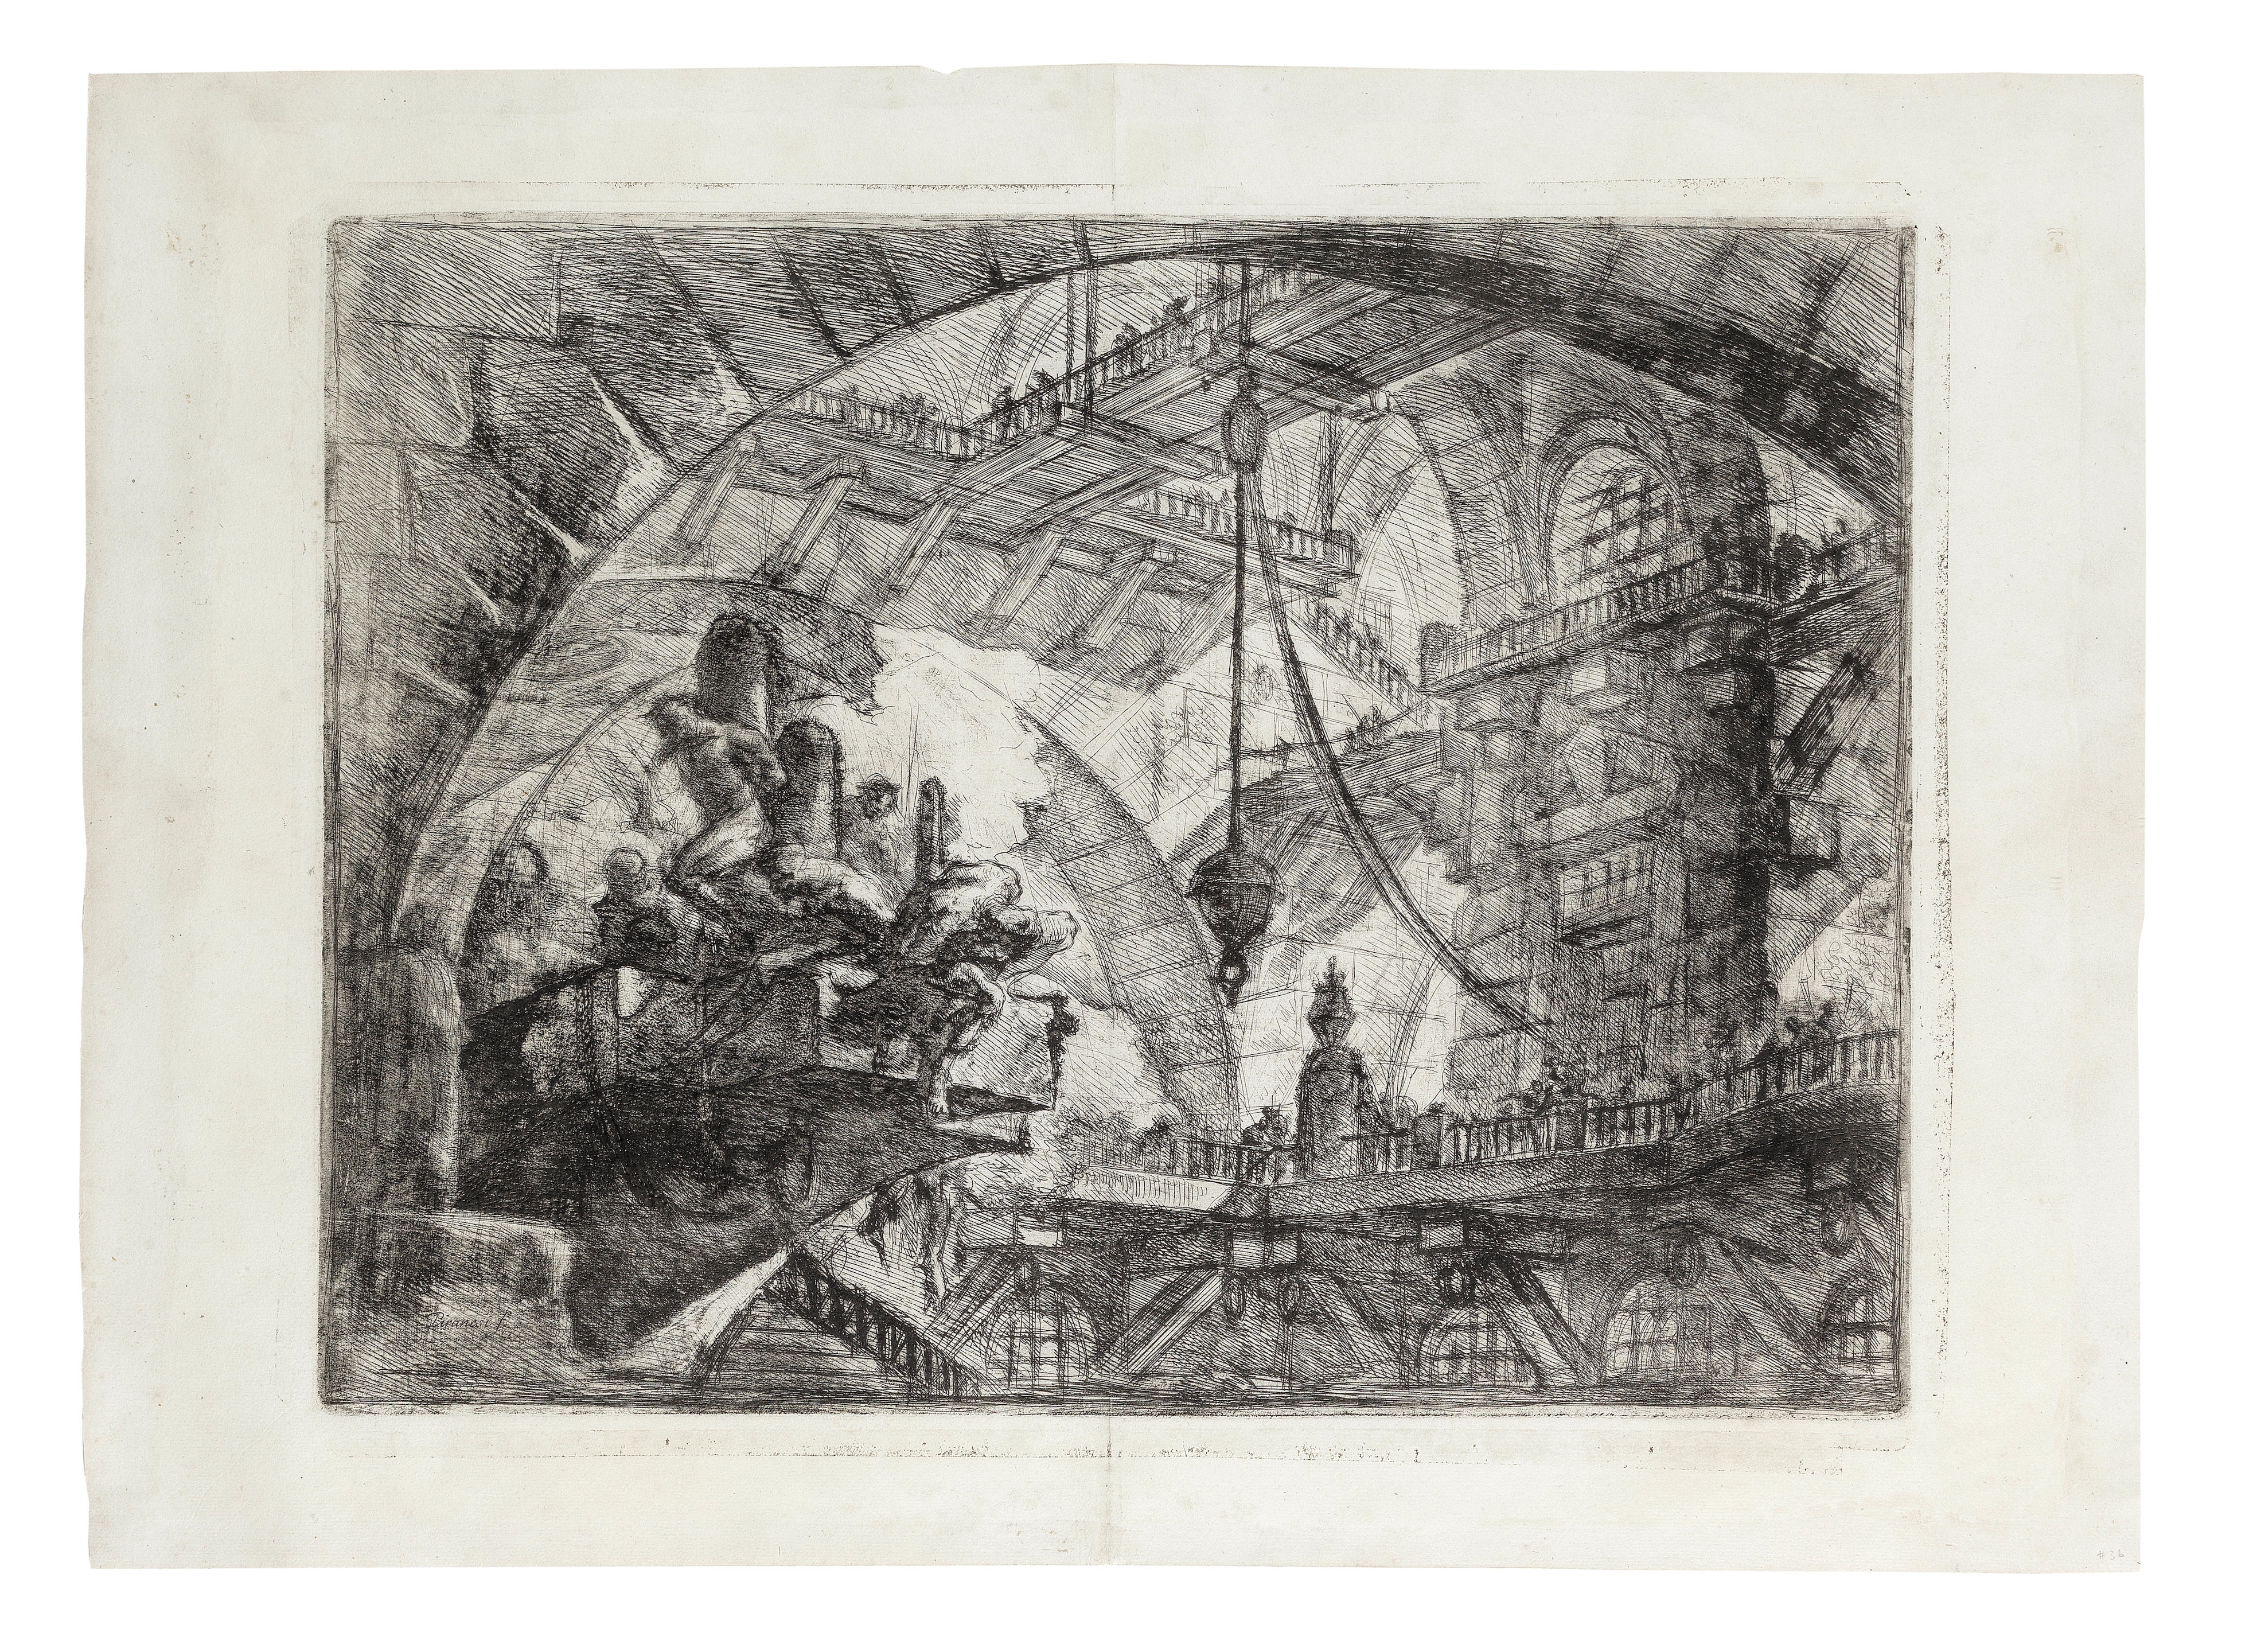 Prisoners on a projecting platform, from Carceri d'Invenzione by Giovanni Battista Piranesi, circa 1749